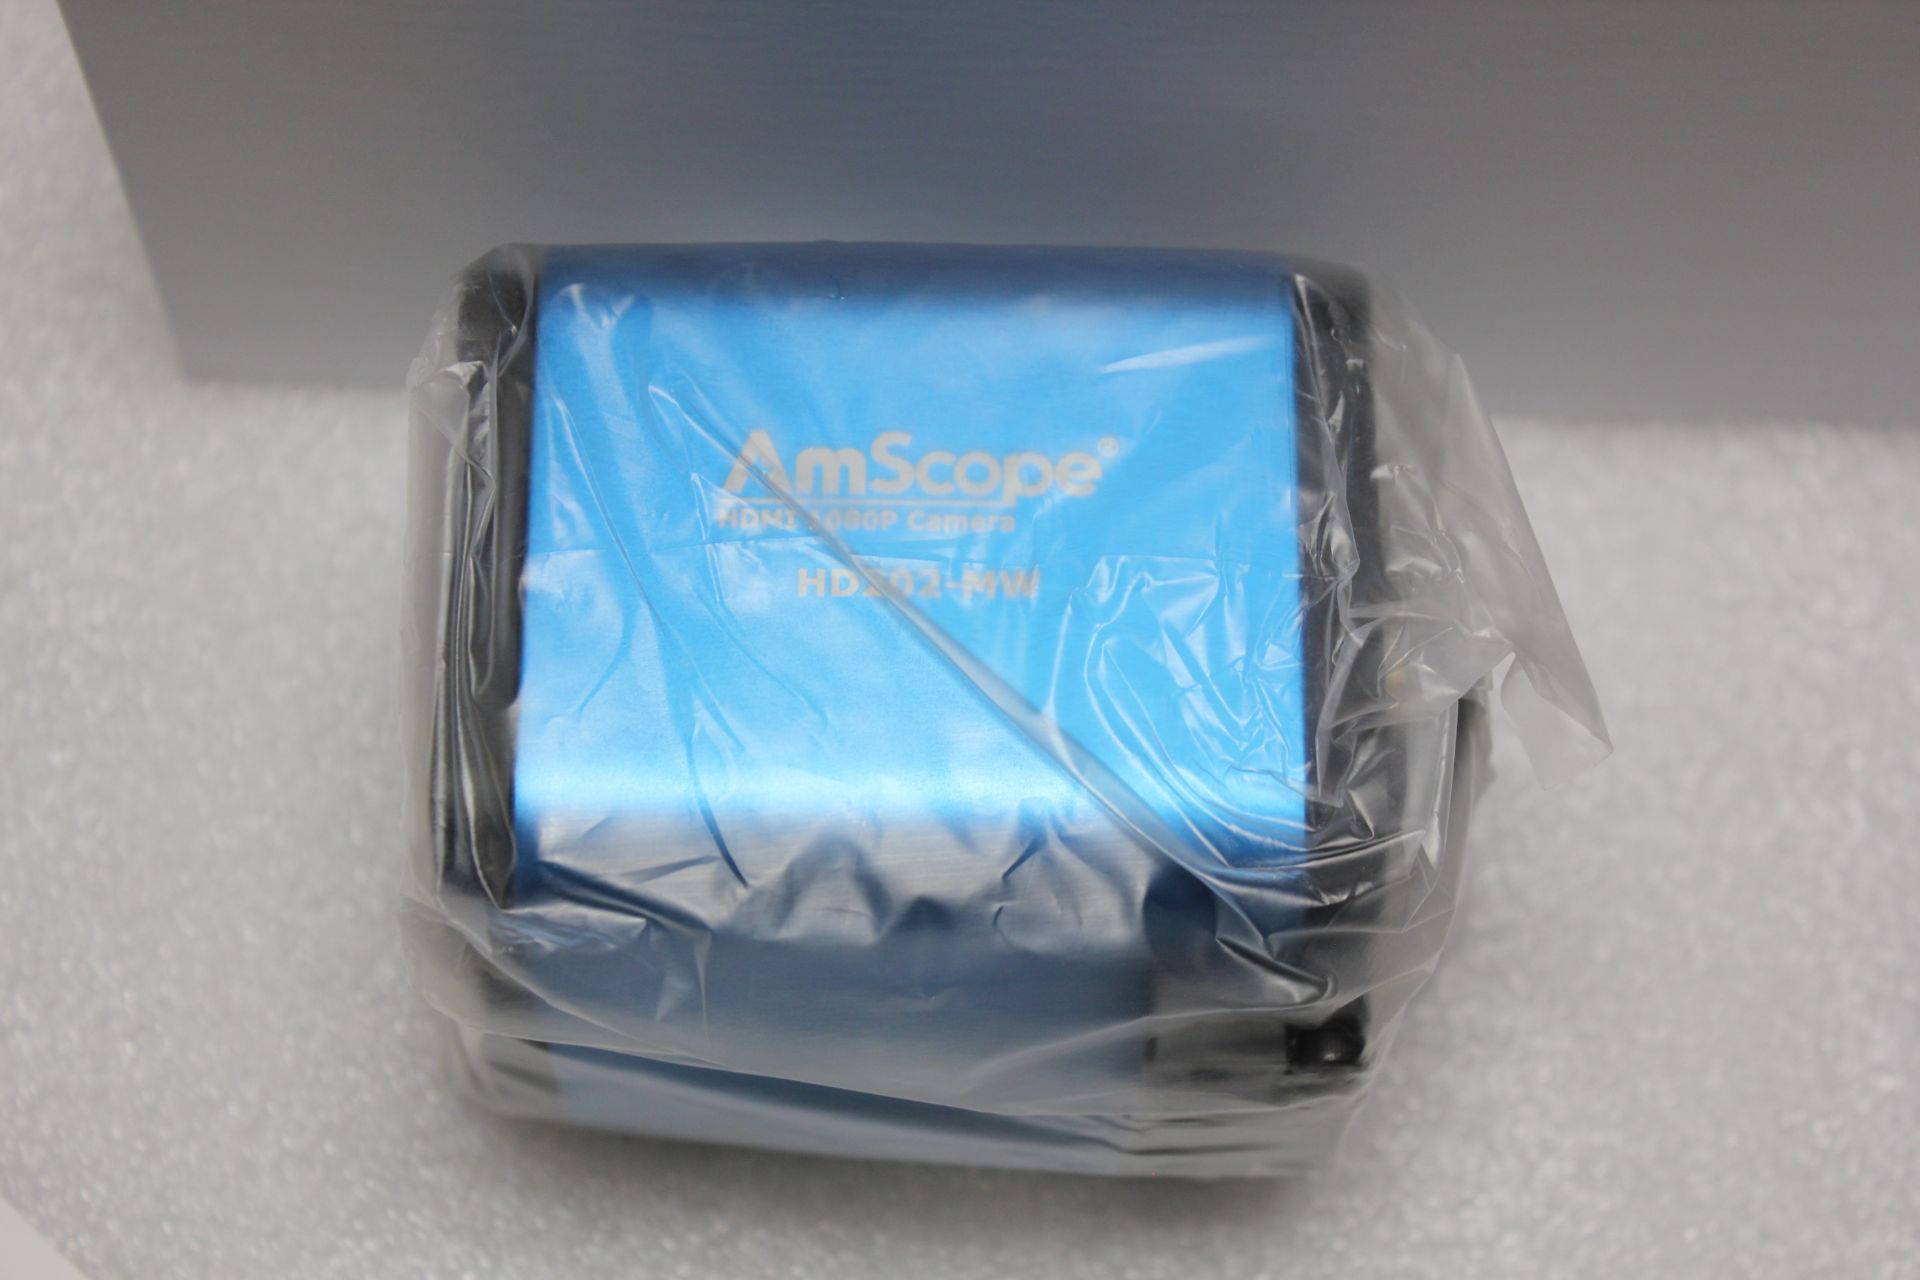 NEW AMSCOPE 1080P HDMI & WiFi MICROSCOPE CAMERA - Image 7 of 8